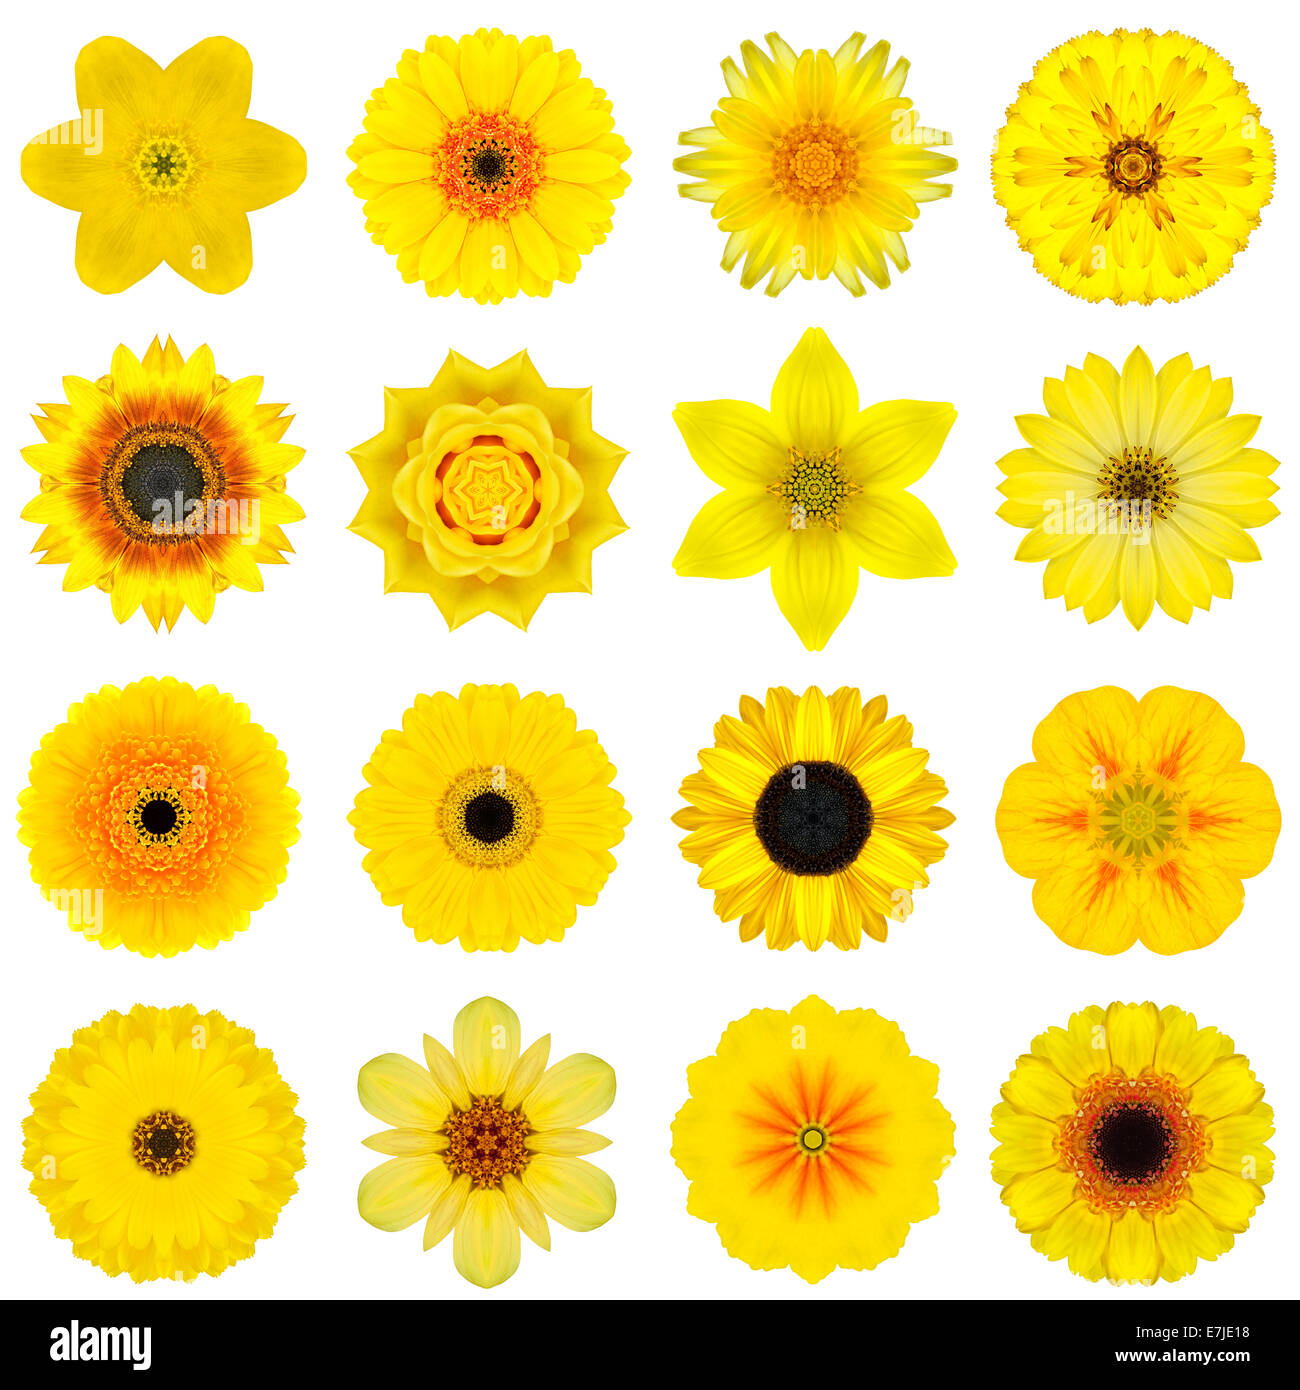 Große Sammlung von verschiedenen gelben konzentrische Muster Blumen. Kaleidoskopische Mandala-Muster, Isolated on White Background. Konzen Stockfoto